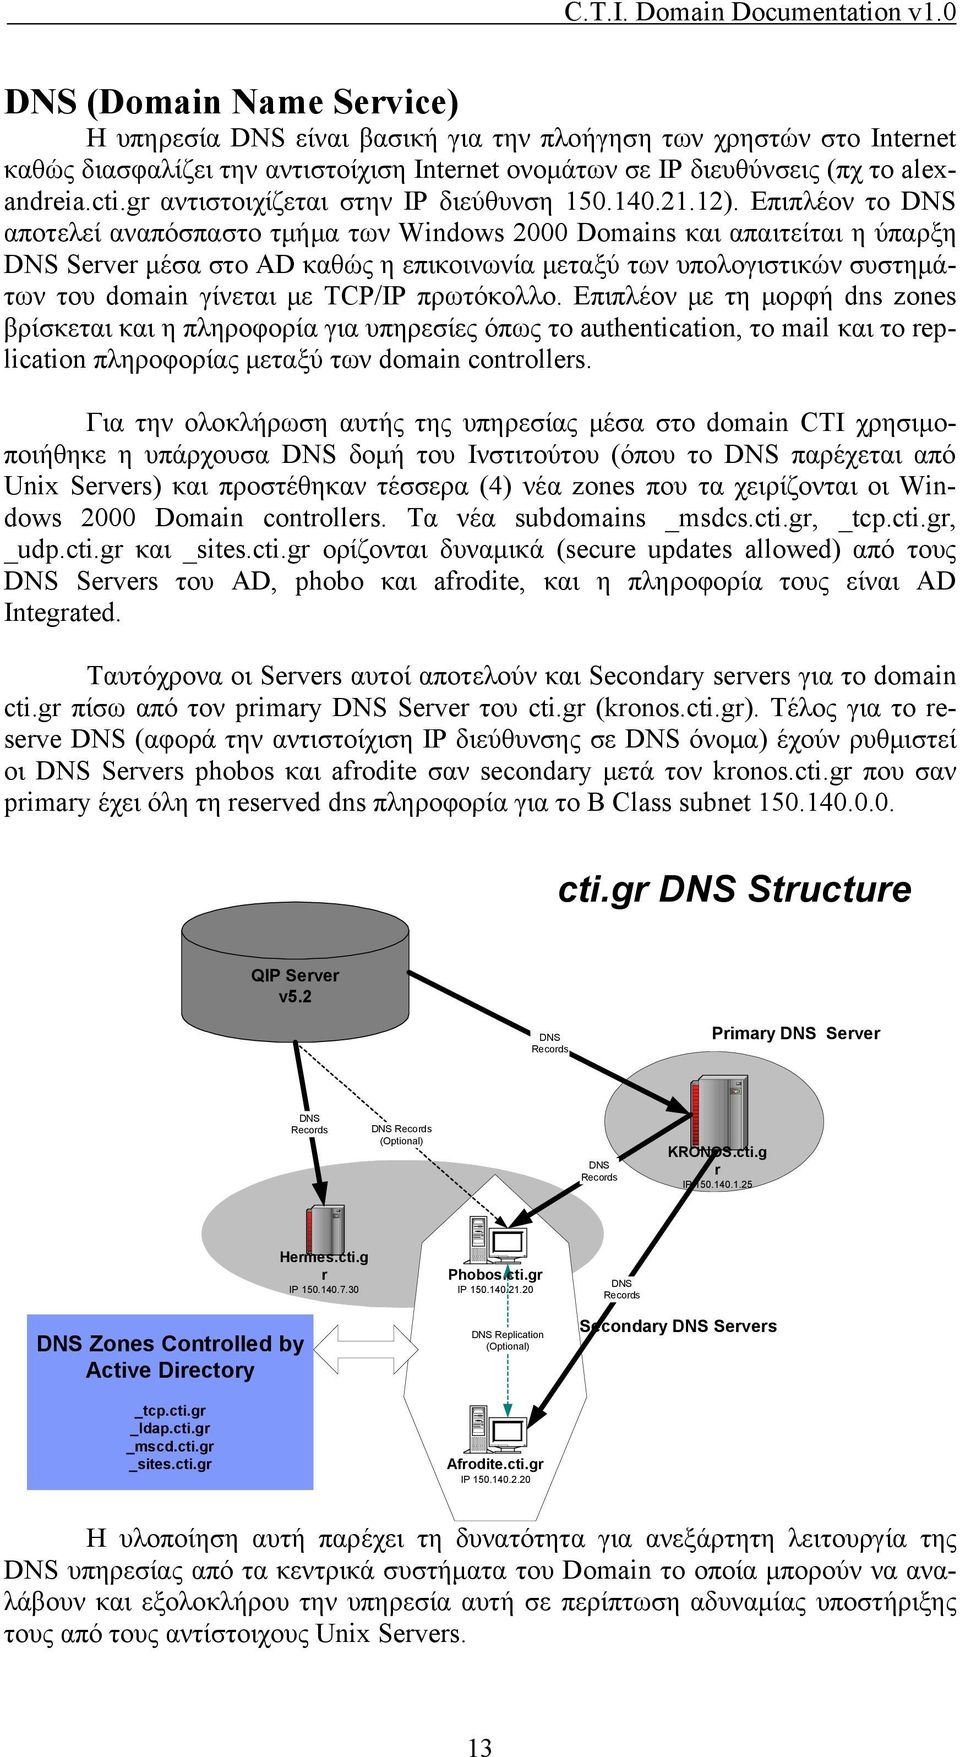 Επιπλέον το DNS αποτελεί αναπόσπαστο τμήμα των Windows 2000 Domains και απαιτείται η ύπαρξη DNS Server μέσα στο AD καθώς η επικοινωνία μεταξύ των υπολογιστικών συστημάτων του domain γίνεται με TCP/IP